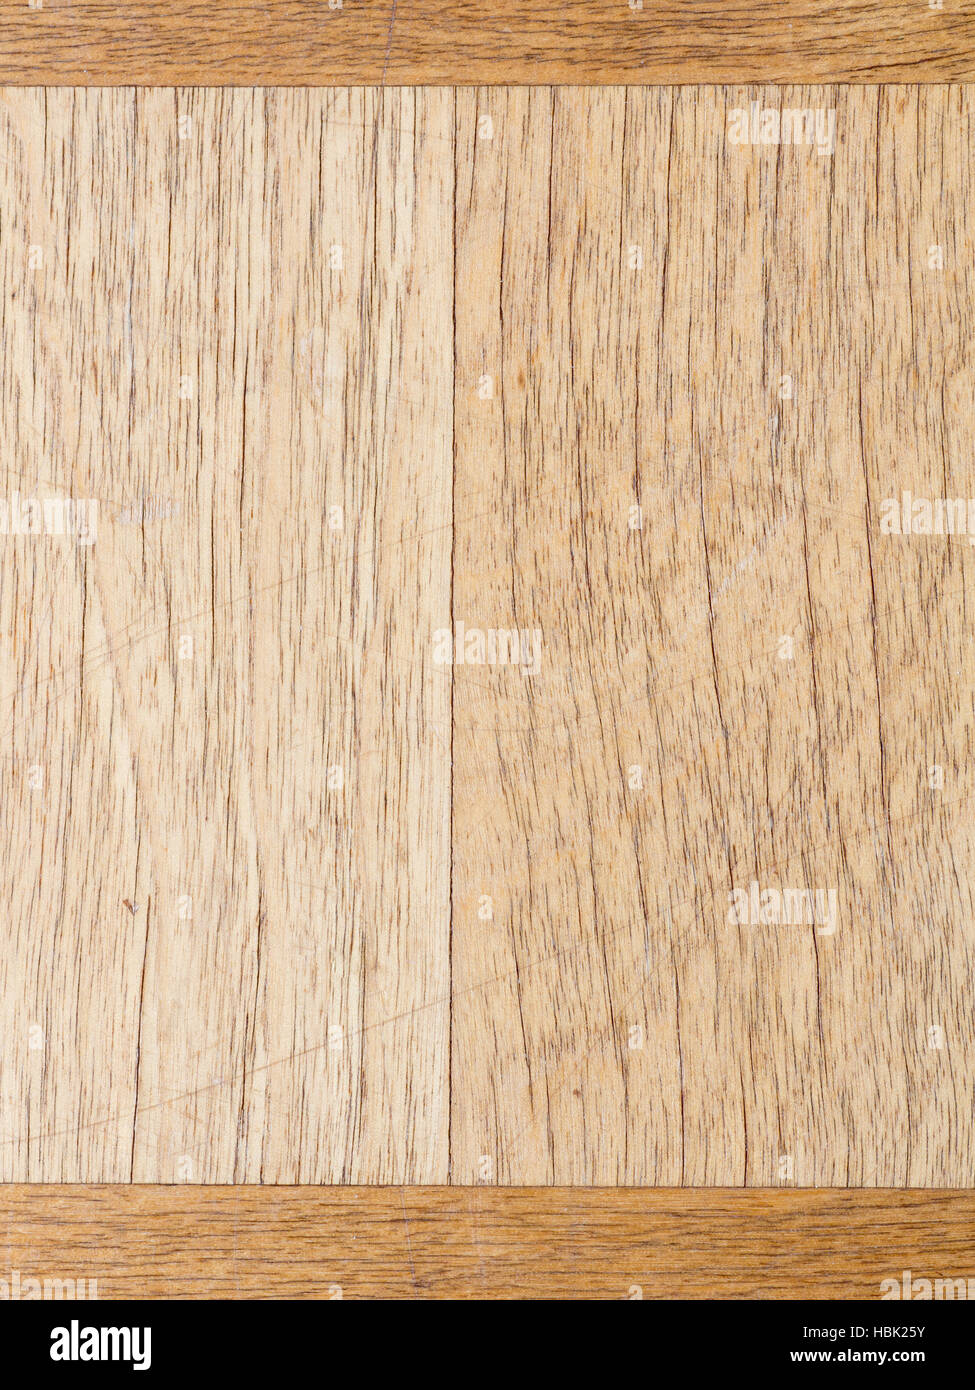 La perfetta immagine della superficie bianca di pavimenti in pannelli di legno Foto Stock